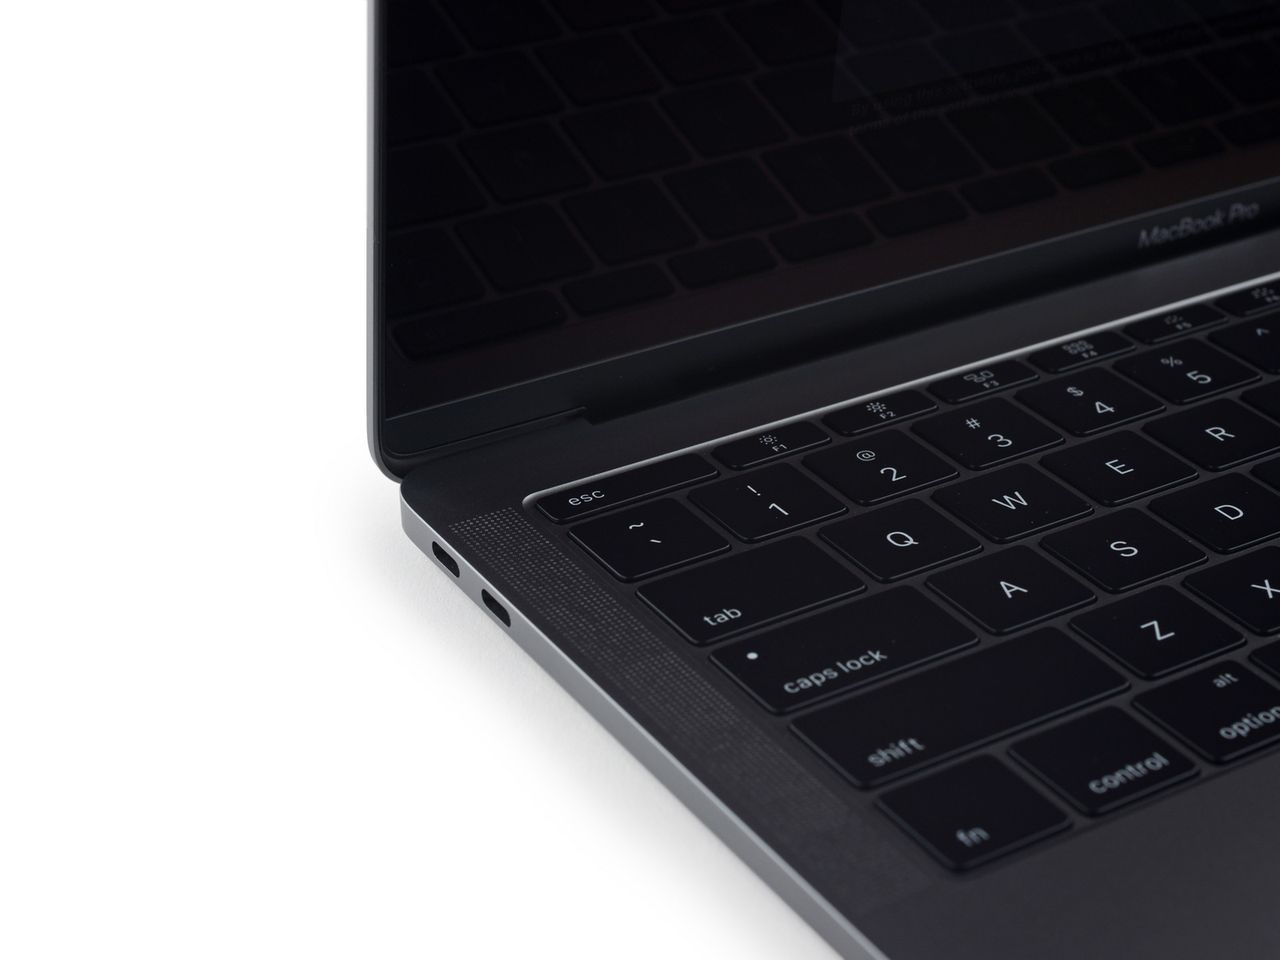 Klawiatura MacBooka Pro jest tak samo wygodna jak ta, którą już znamy z MacBooka Retina. Nic dziwnego, gdyż ich mechanizm jest bardzo zbliżony. (Zdjęcie: iFixit)